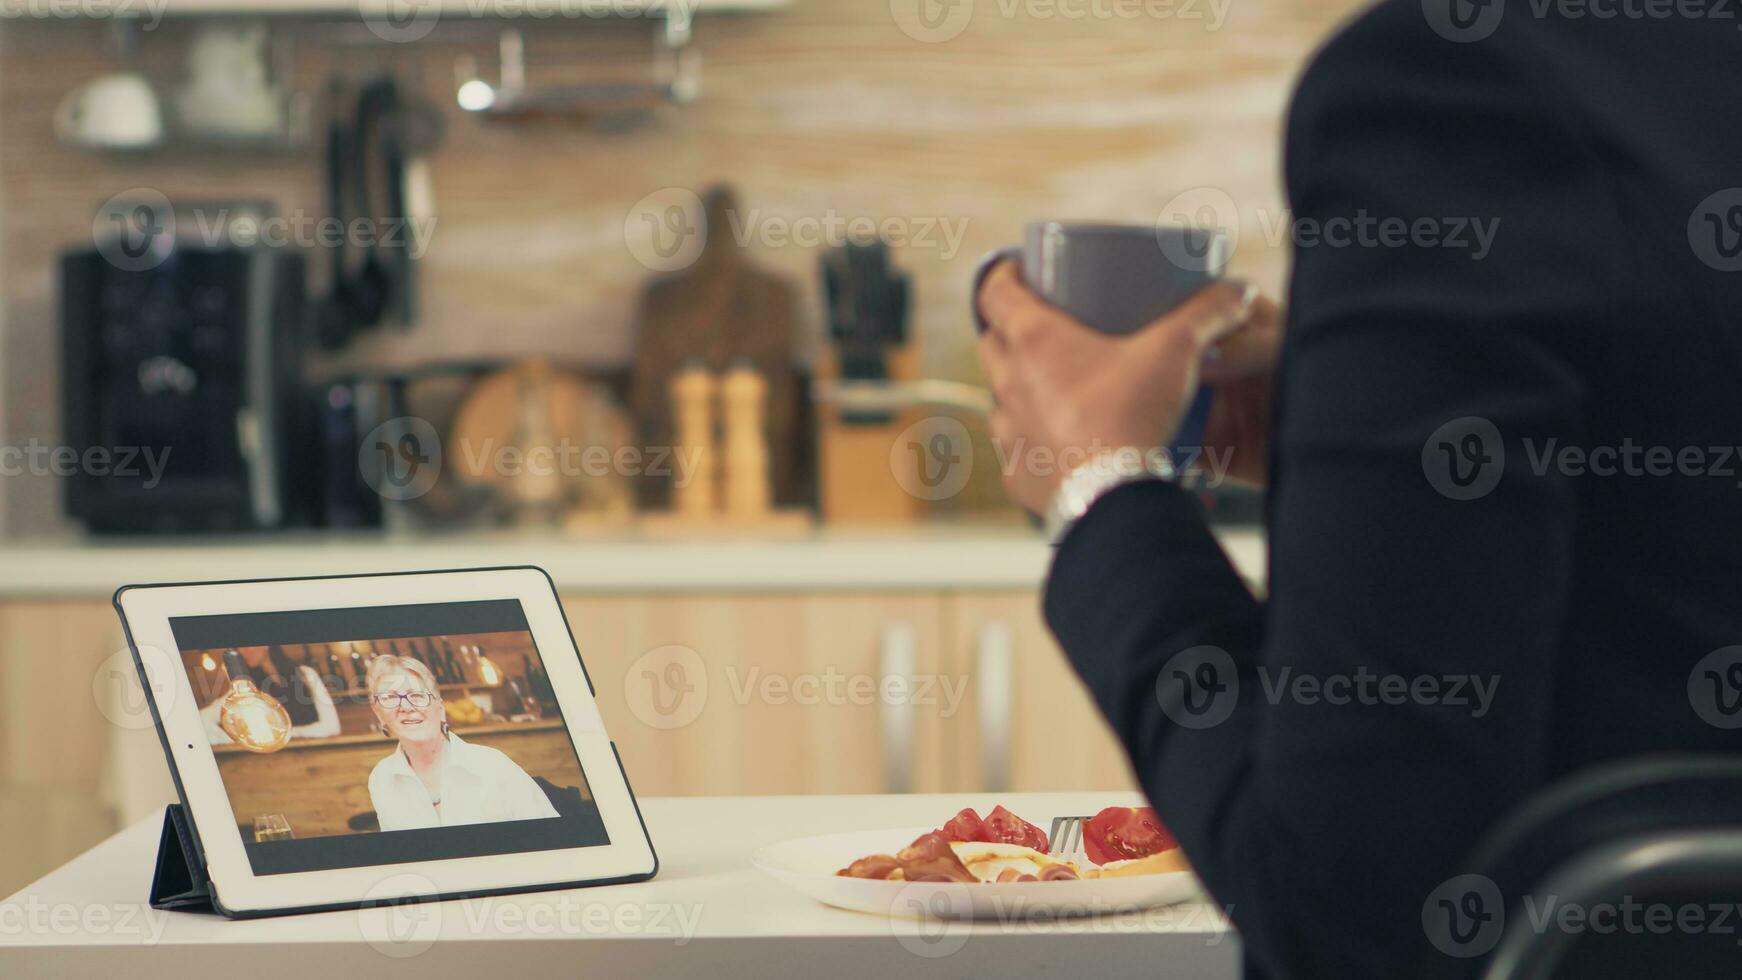 företag kvinna på en video ring upp med henne mor under frukost. använder sig av modern uppkopplad internet webb teknologi till chatt via webbkamera videokonferens app med släktingar, familj, vänner och medarbetare foto